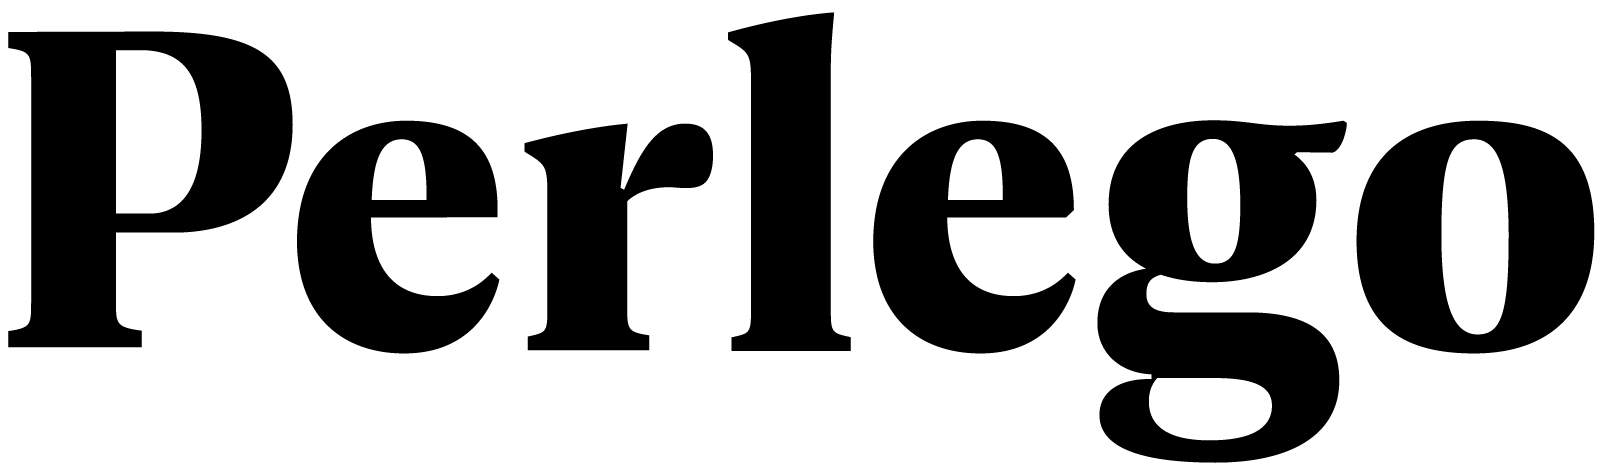 Perlego company logo